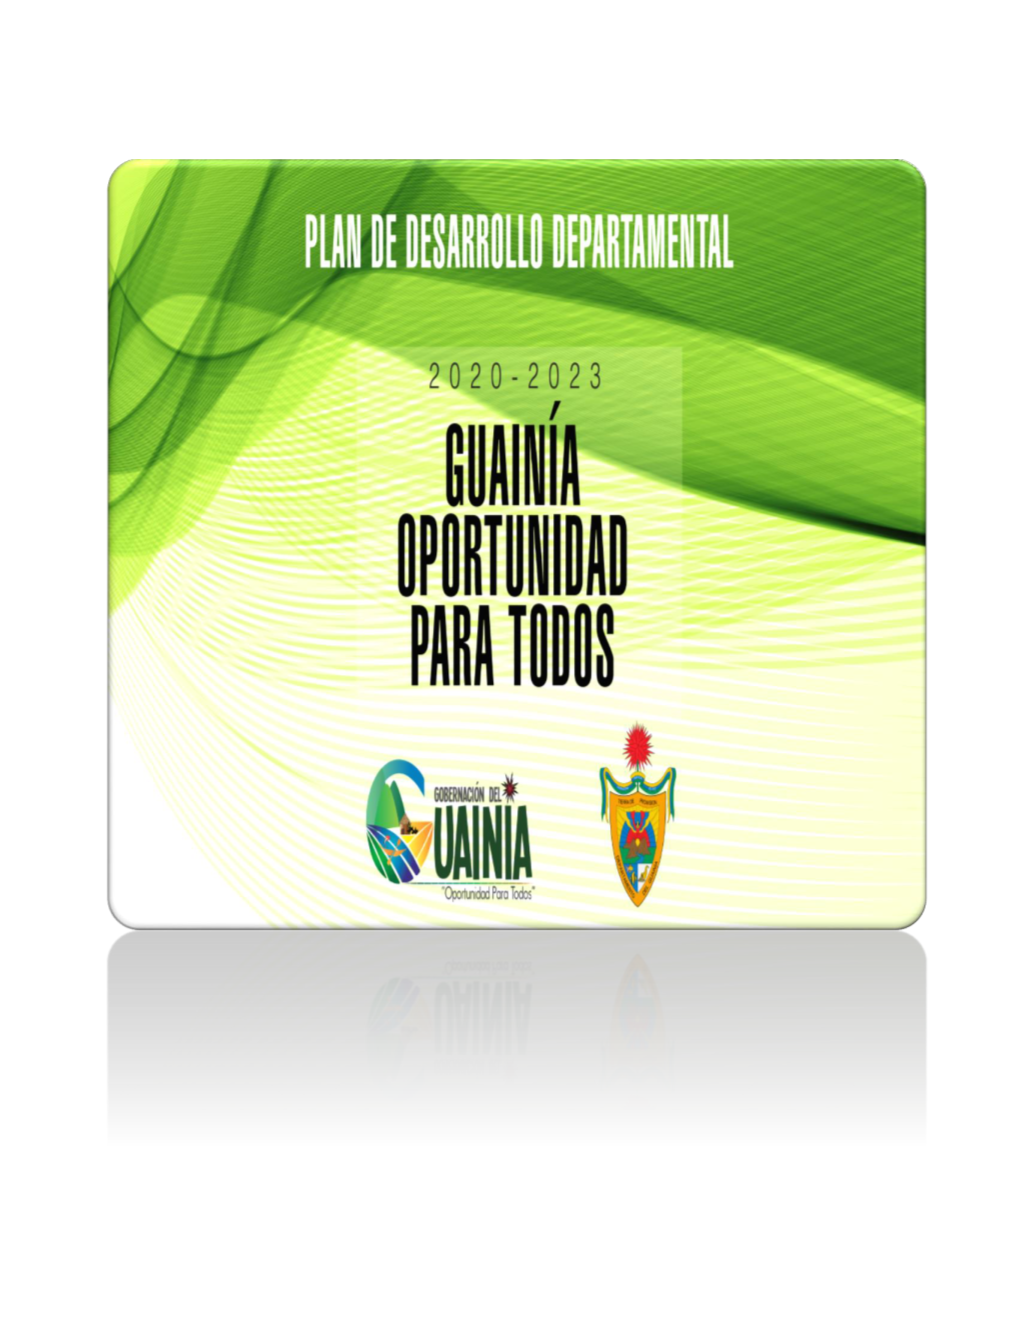 Plan De Desarrollo Departamental “Guainia: Oportunidad Para Todos 2020-2023”